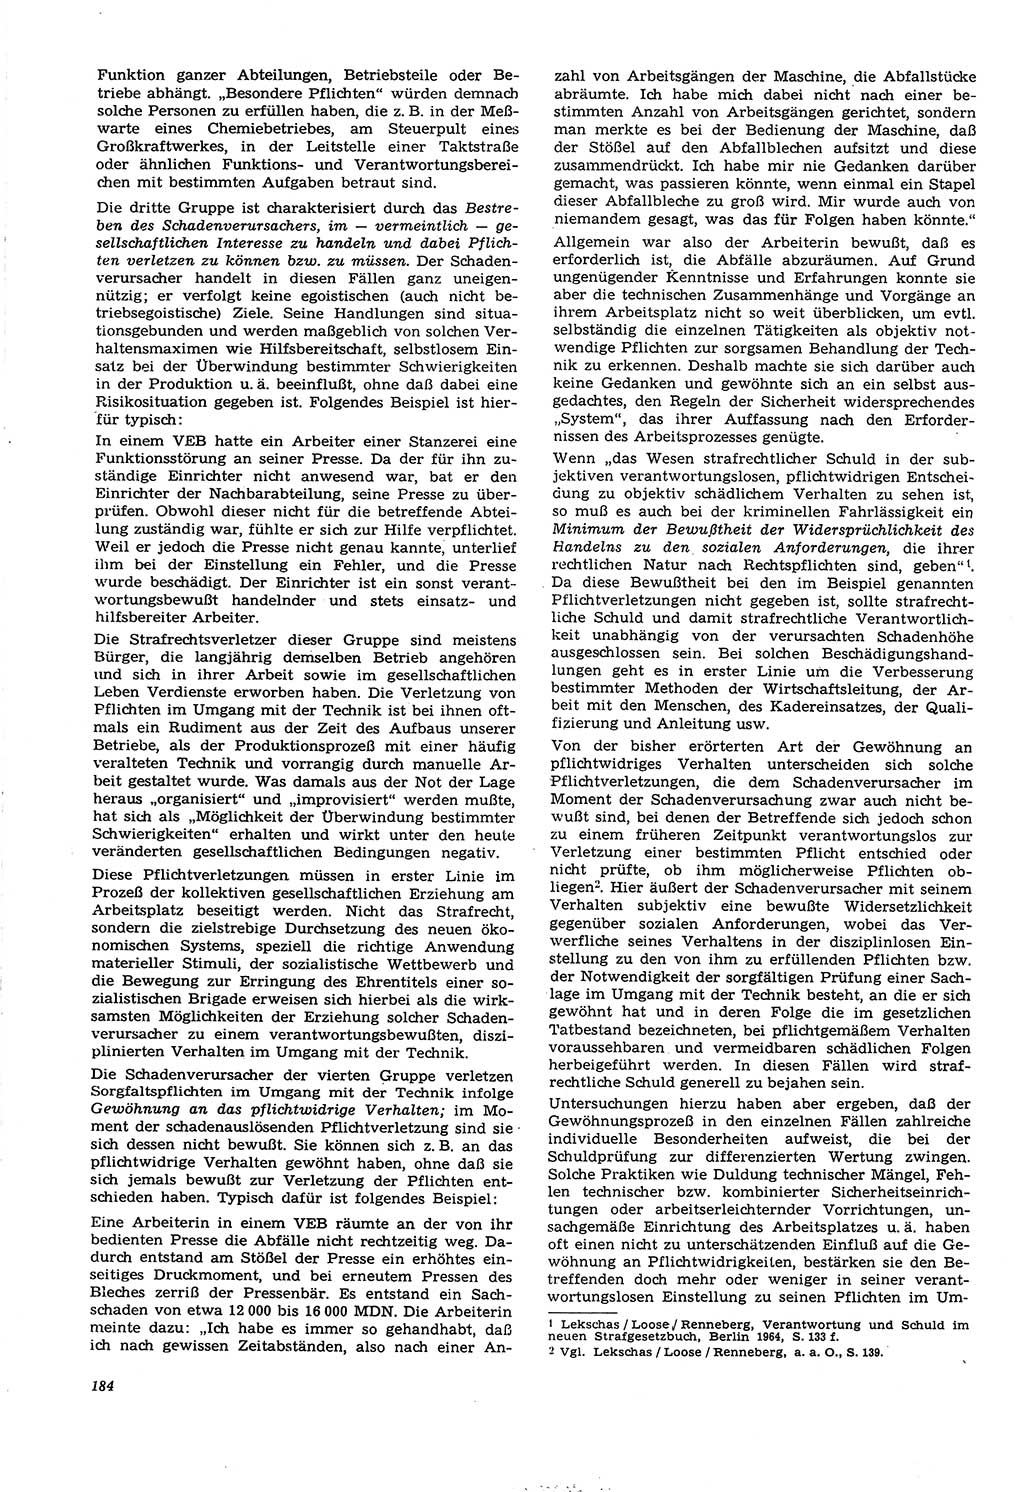 Neue Justiz (NJ), Zeitschrift für Recht und Rechtswissenschaft [Deutsche Demokratische Republik (DDR)], 21. Jahrgang 1967, Seite 184 (NJ DDR 1967, S. 184)